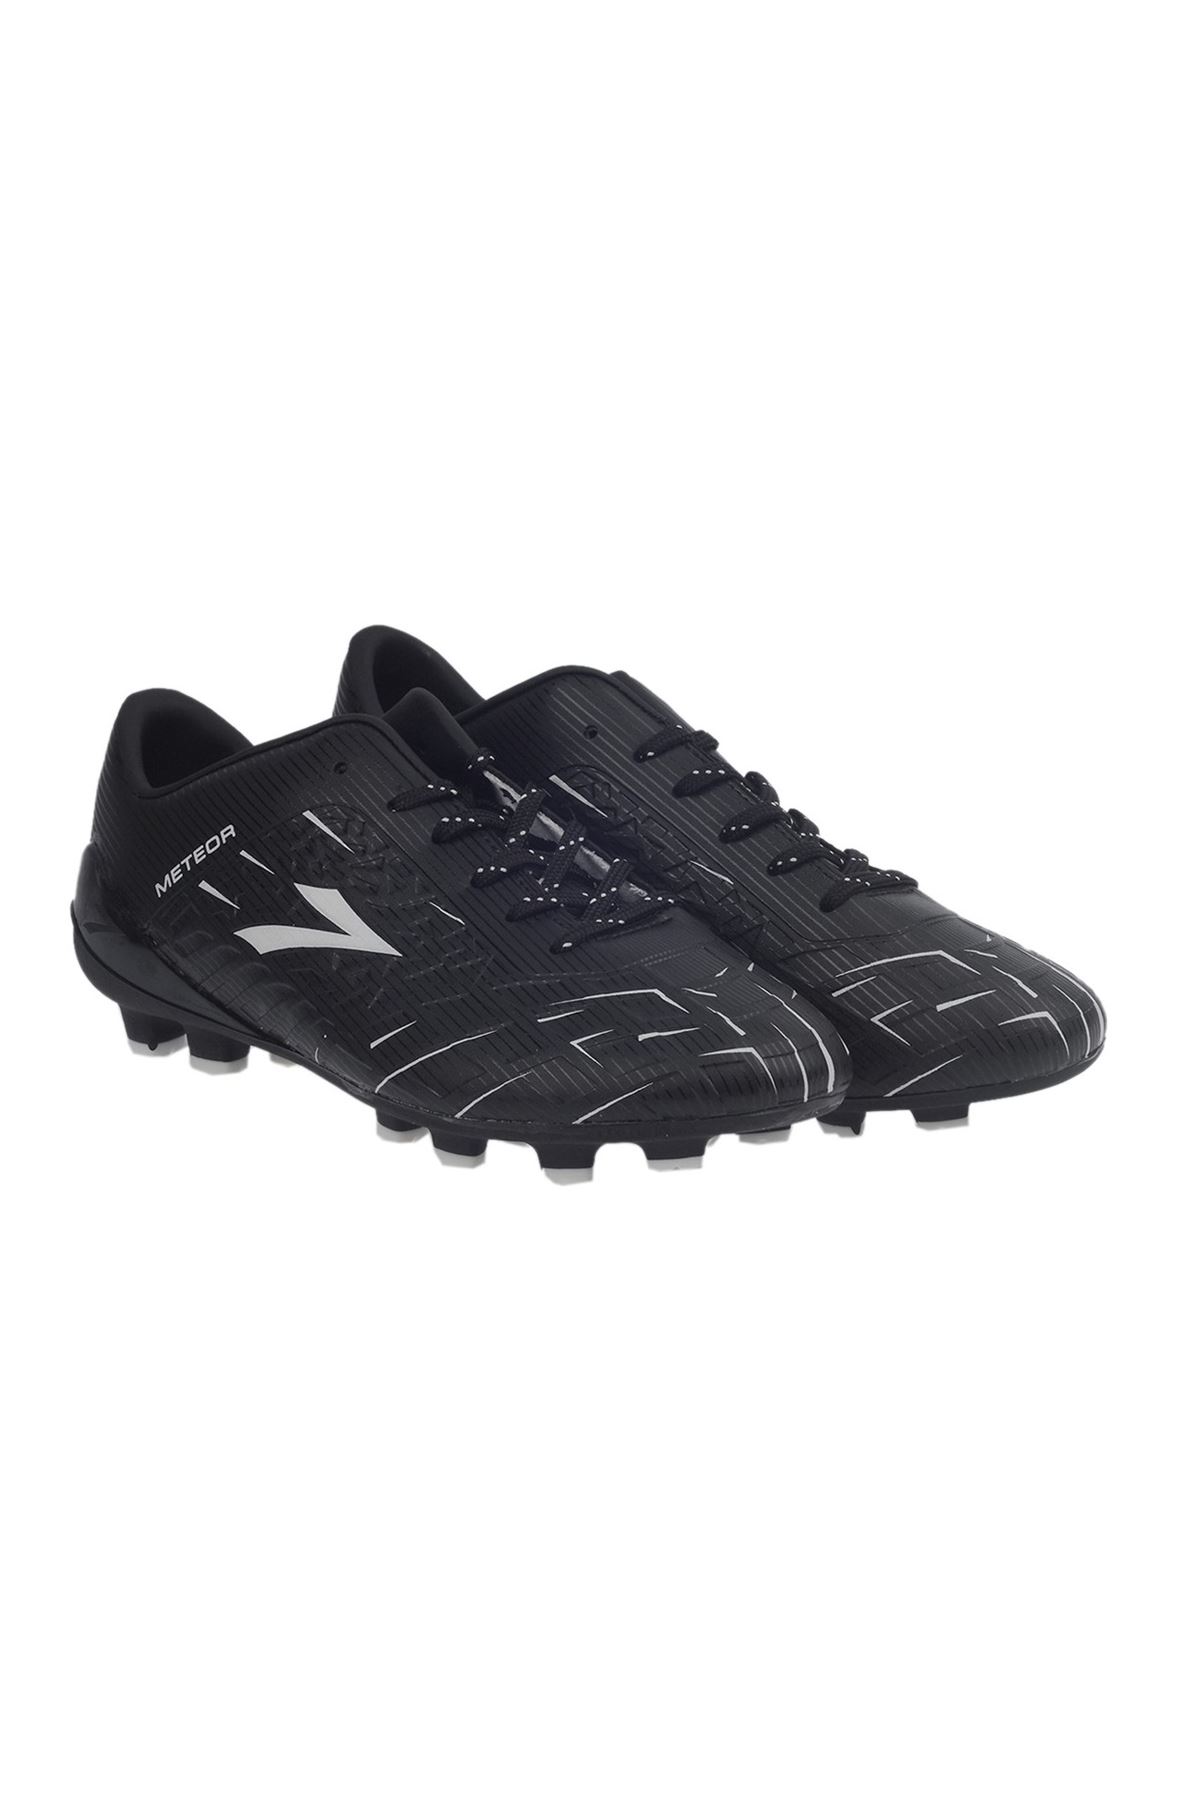 Lig Meteor (31-34) Futbol Ayakkabısı Krampon - Siyah